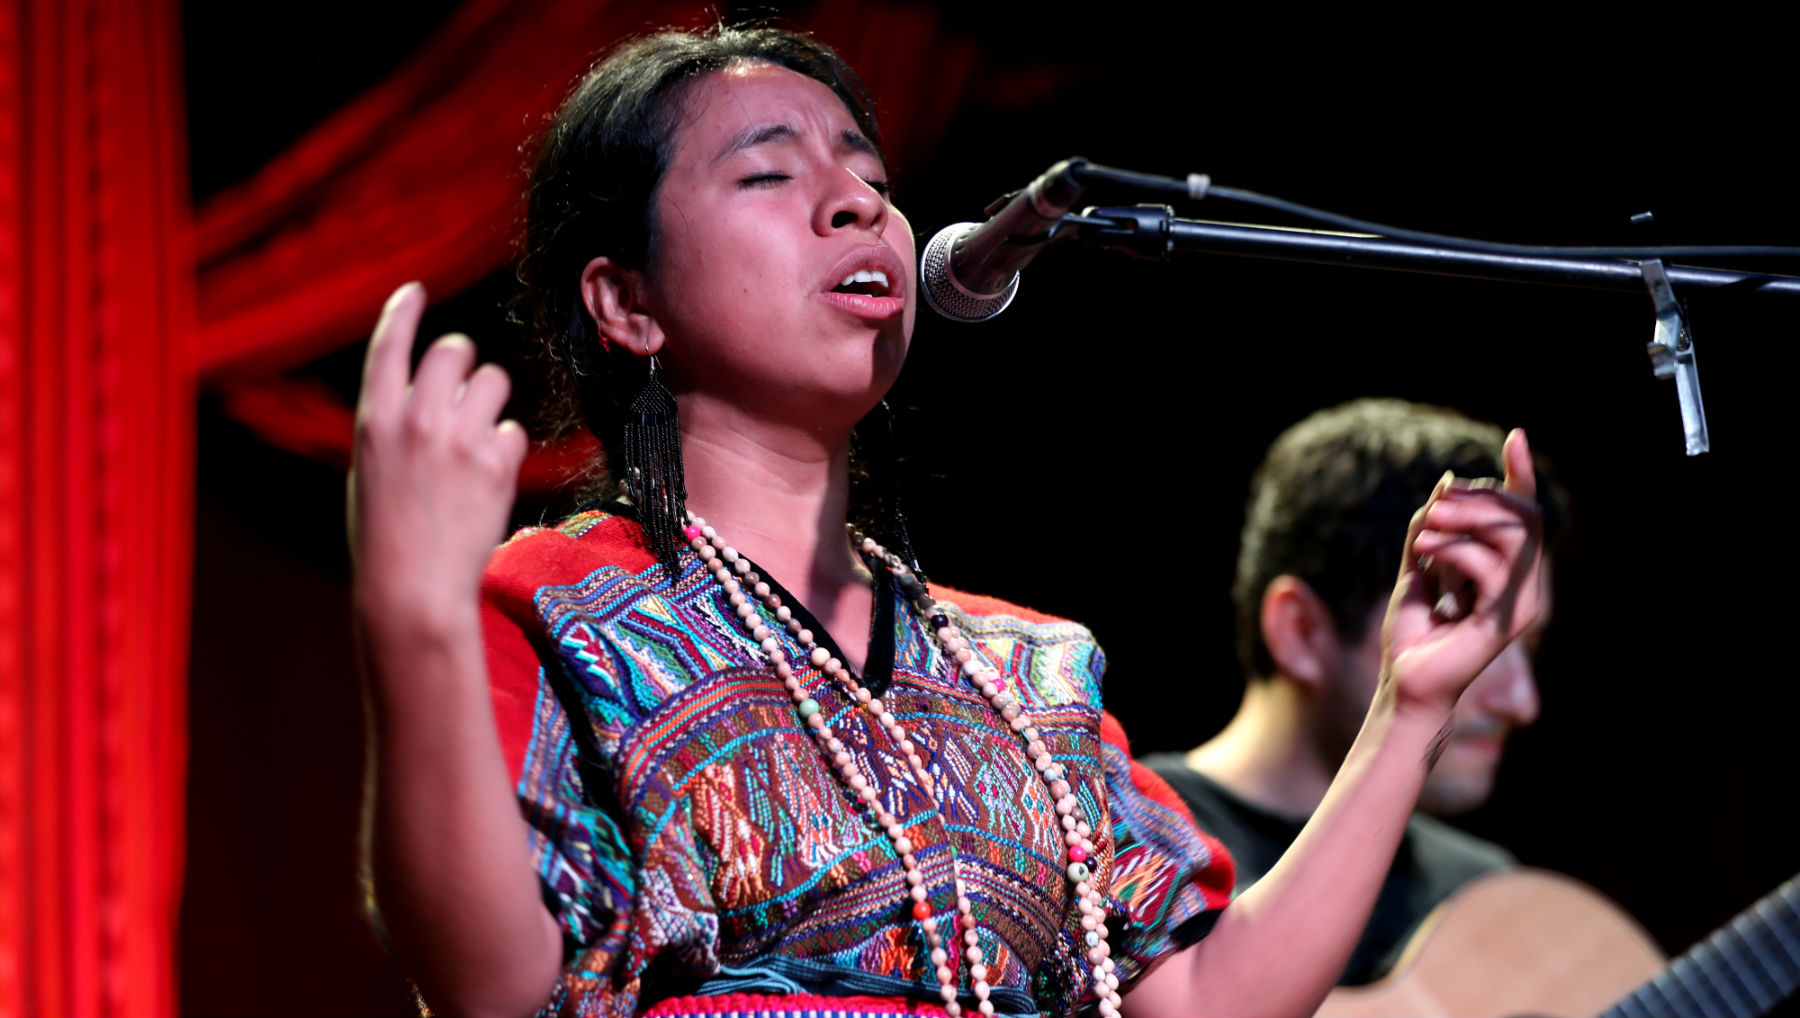 La cantautora guatemalteca promociona el álbum "Somos". (Foto Prensa Libre: Keneth Cruz)